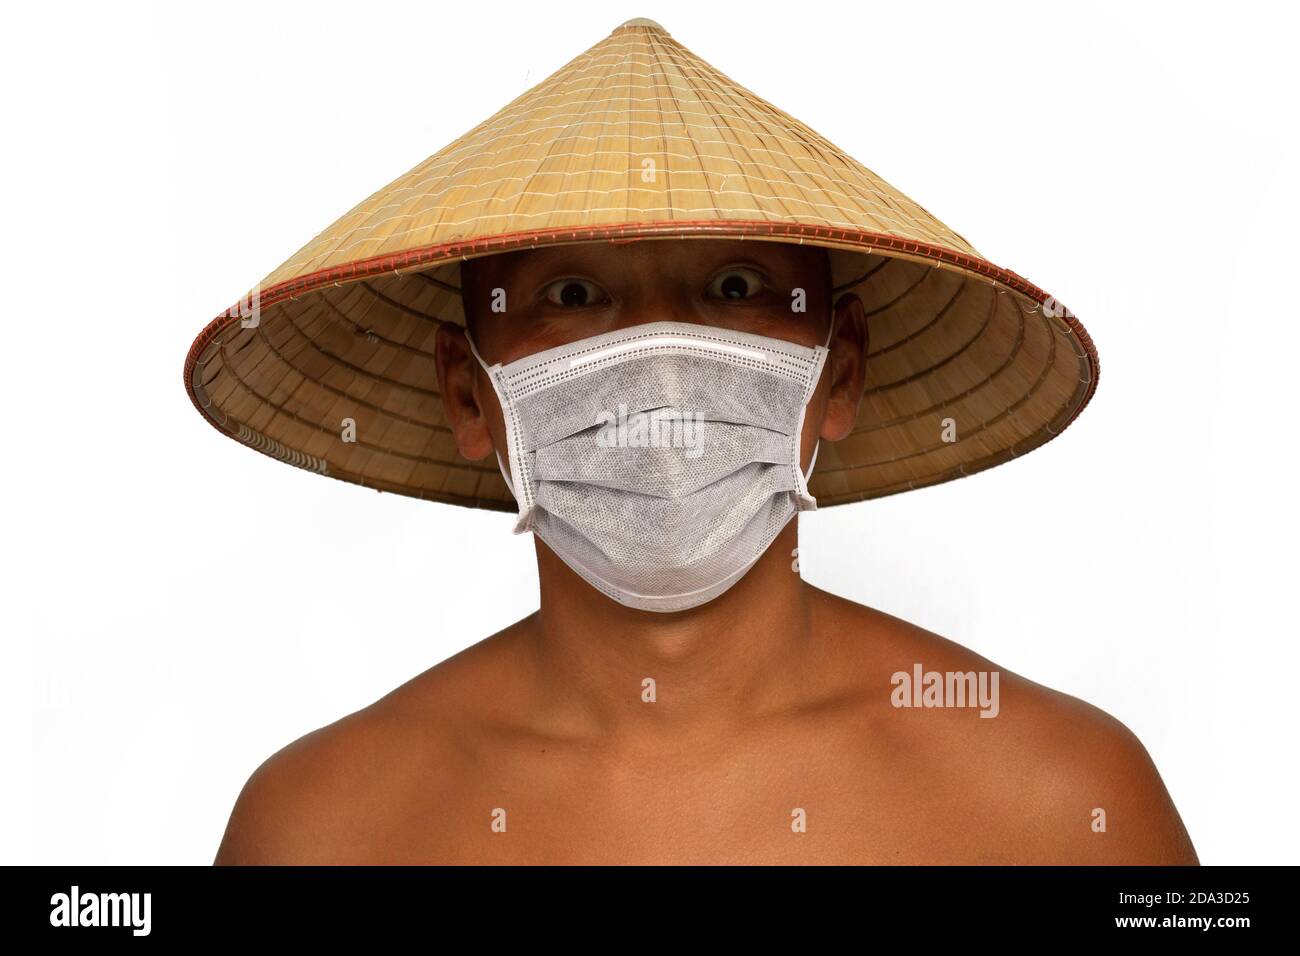 Le jeune asiatique porte un masque médical et un chapeau. Isolé sur fond blanc. Concept des épidémies de pneumonie, des épidémies de coronavirus et d Banque D'Images